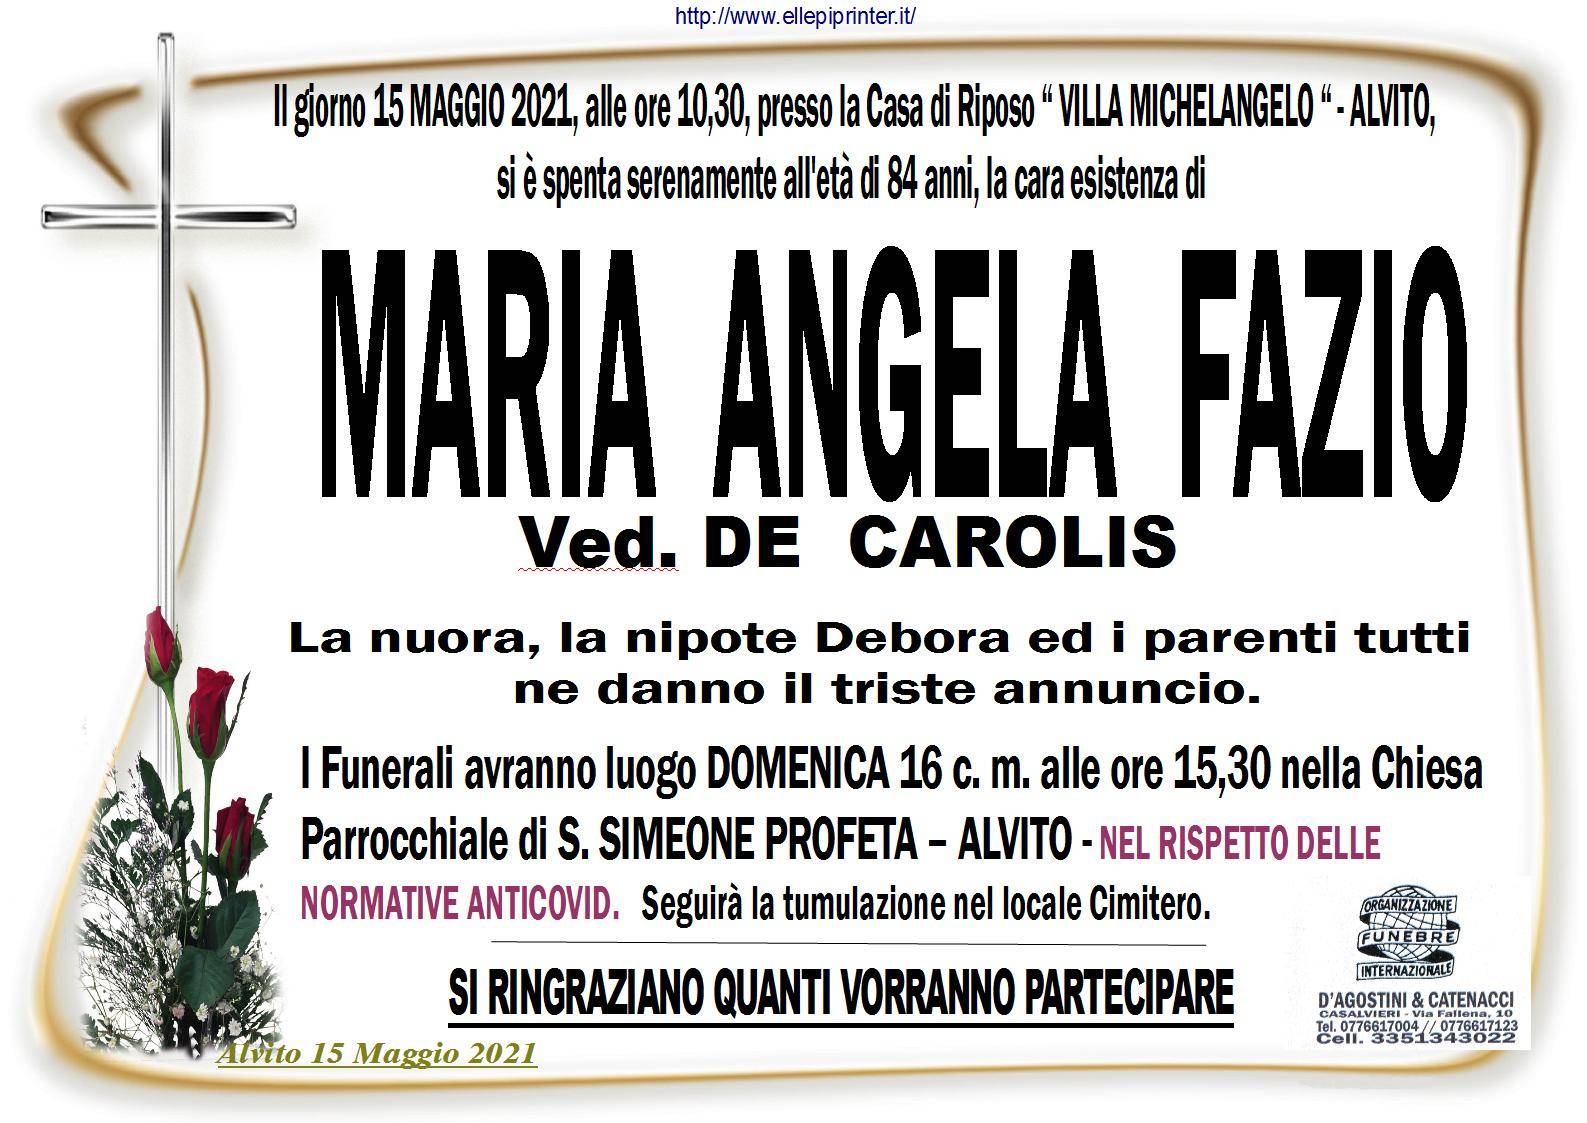 Maria Angela Fazio